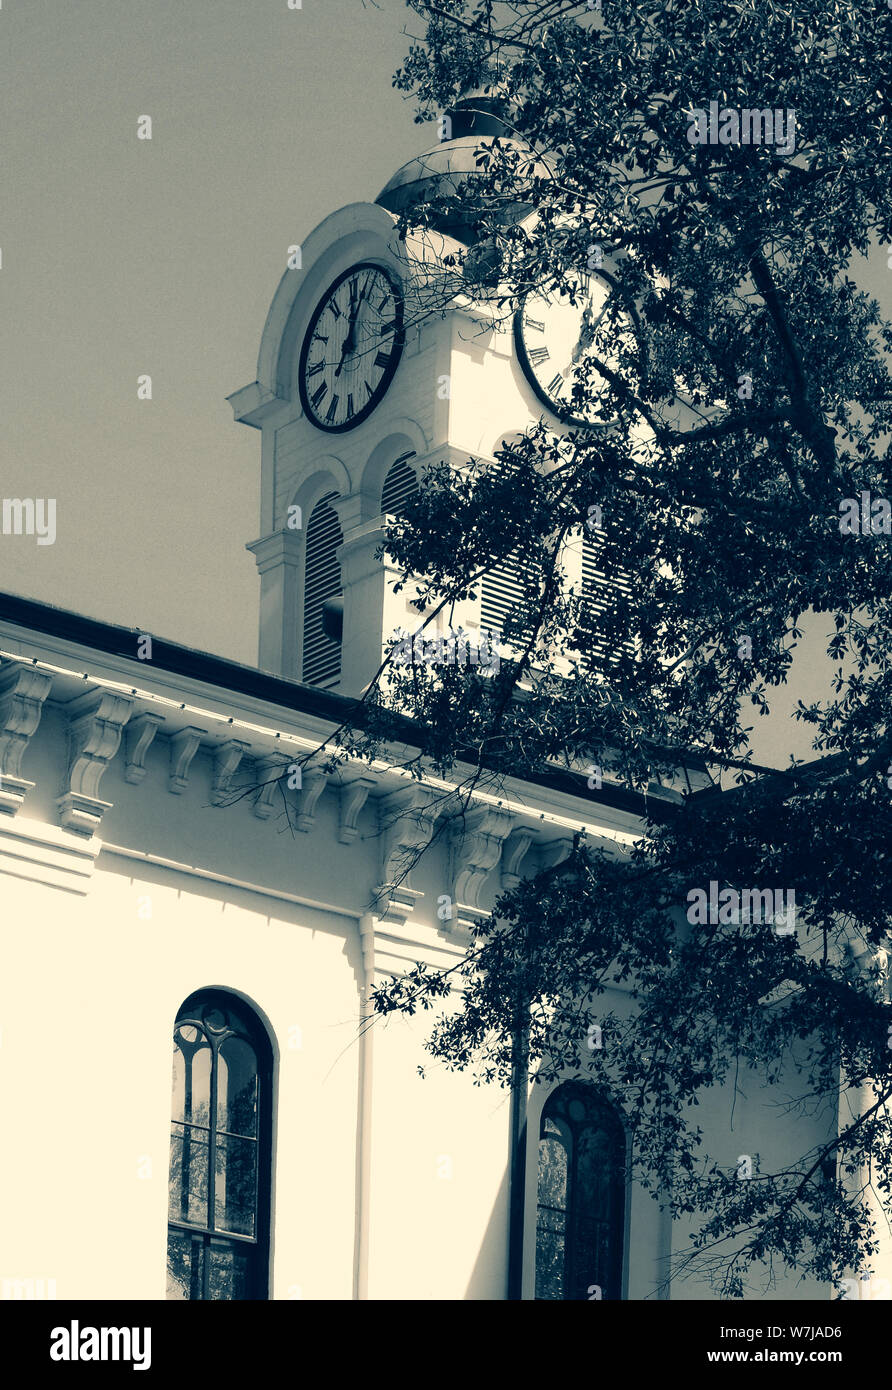 Il carattere distintivo di clock tower avvolta da alberi sulla sommità della storica Lafayette County Courthouse, situato sulla Courthouse Square in Oxford, MS, STATI UNITI D'AMERICA Foto Stock